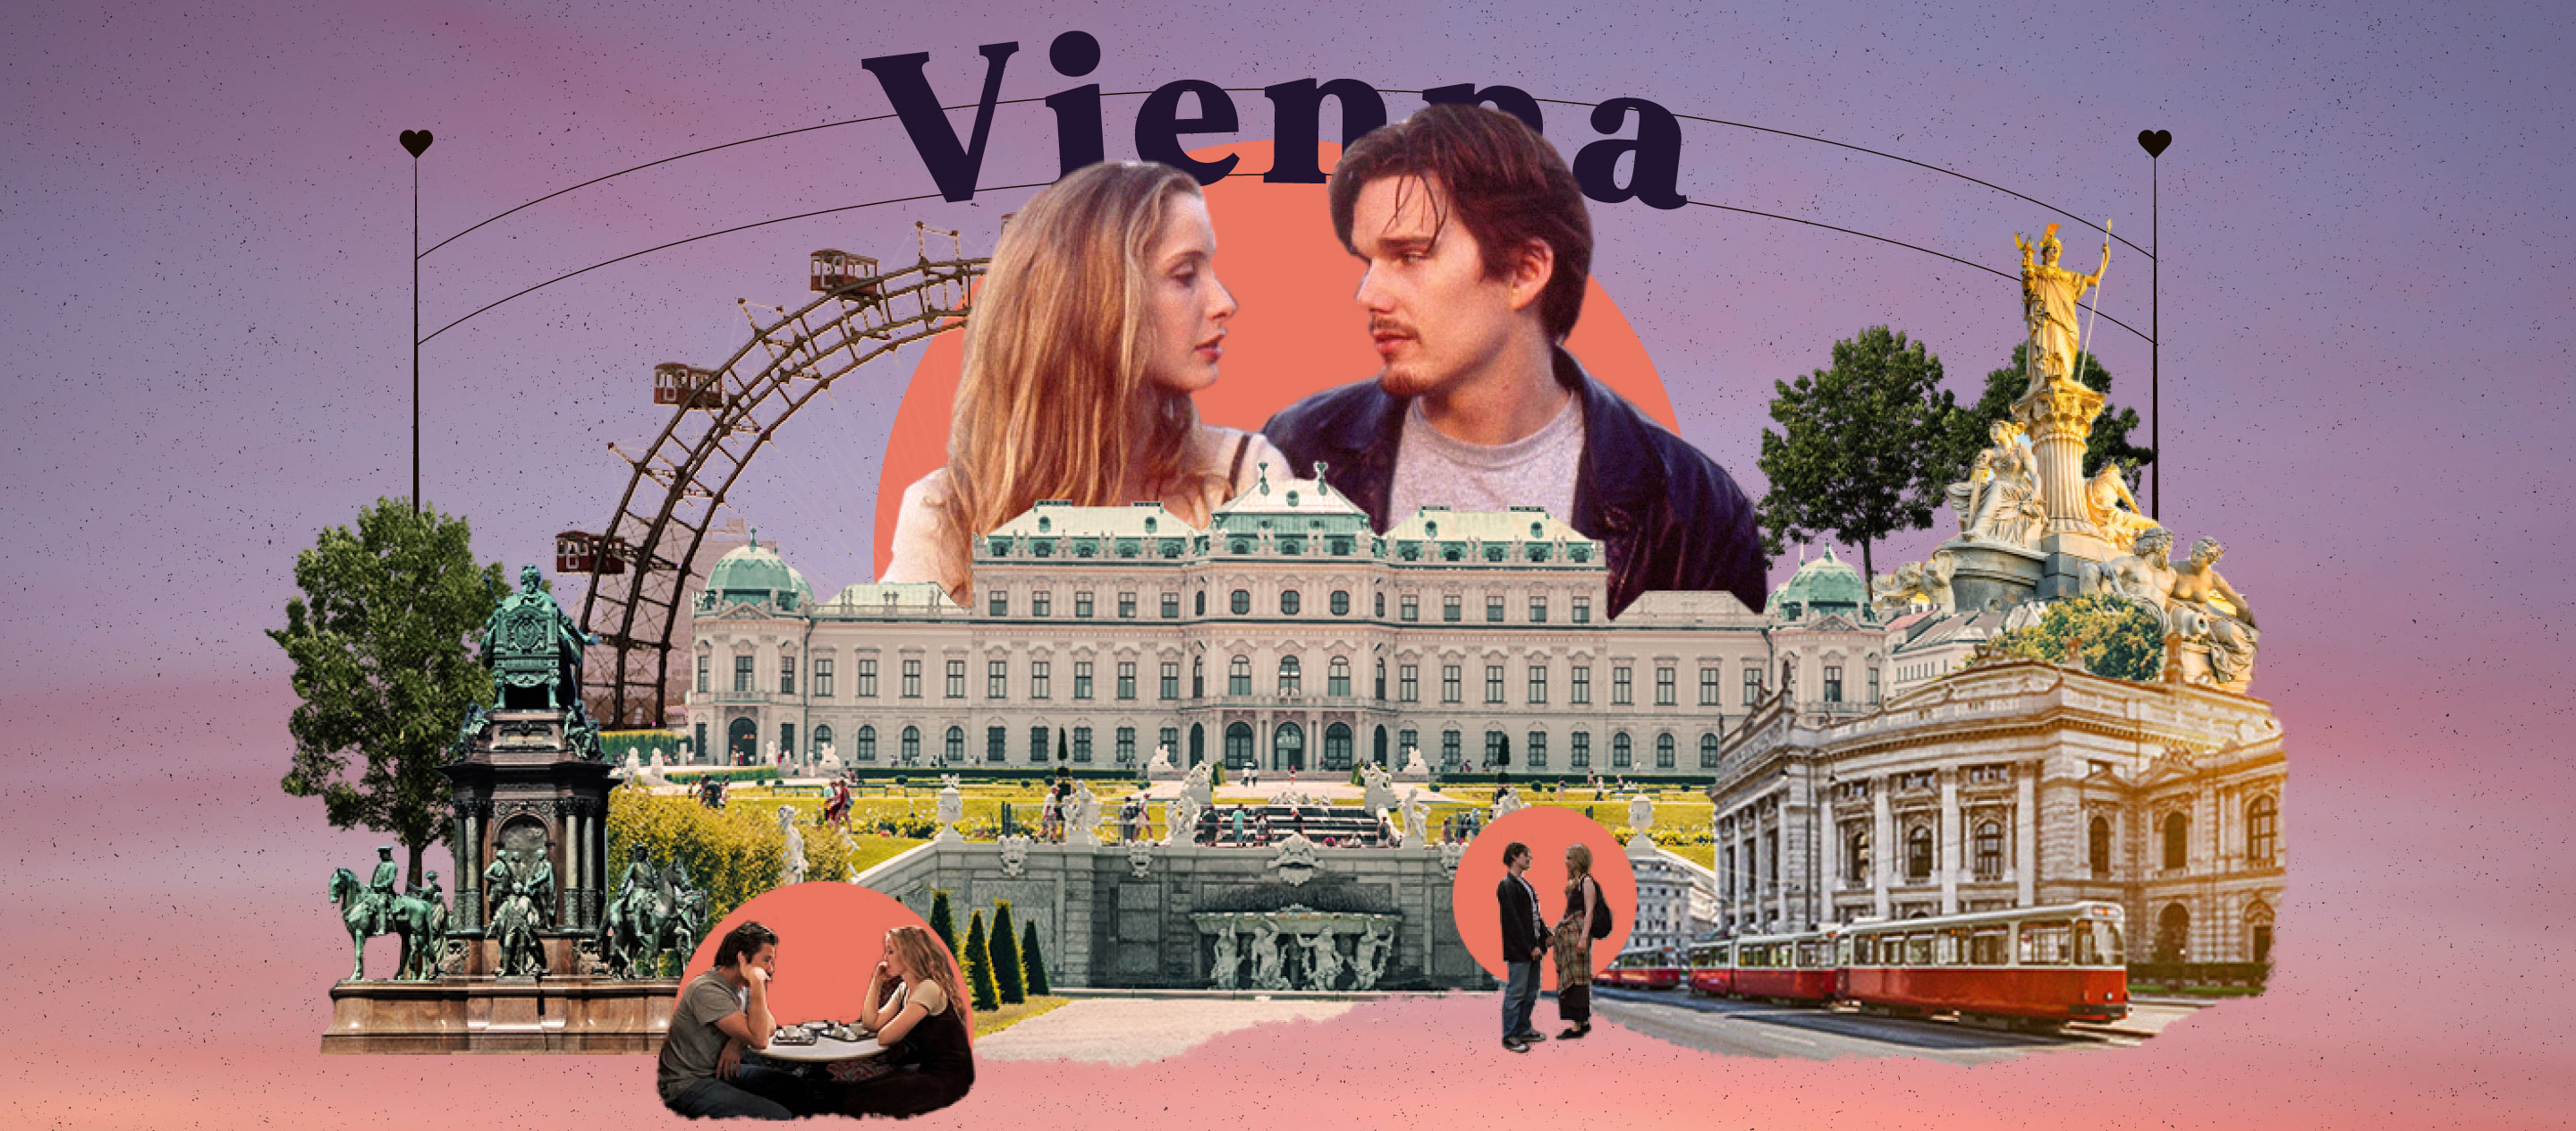 Vienna เมืองโรแมนติกใน Before Sunrise ที่ทำให้เจสซี ซีลีน และใครๆ ก็อยากตกหลุมรัก